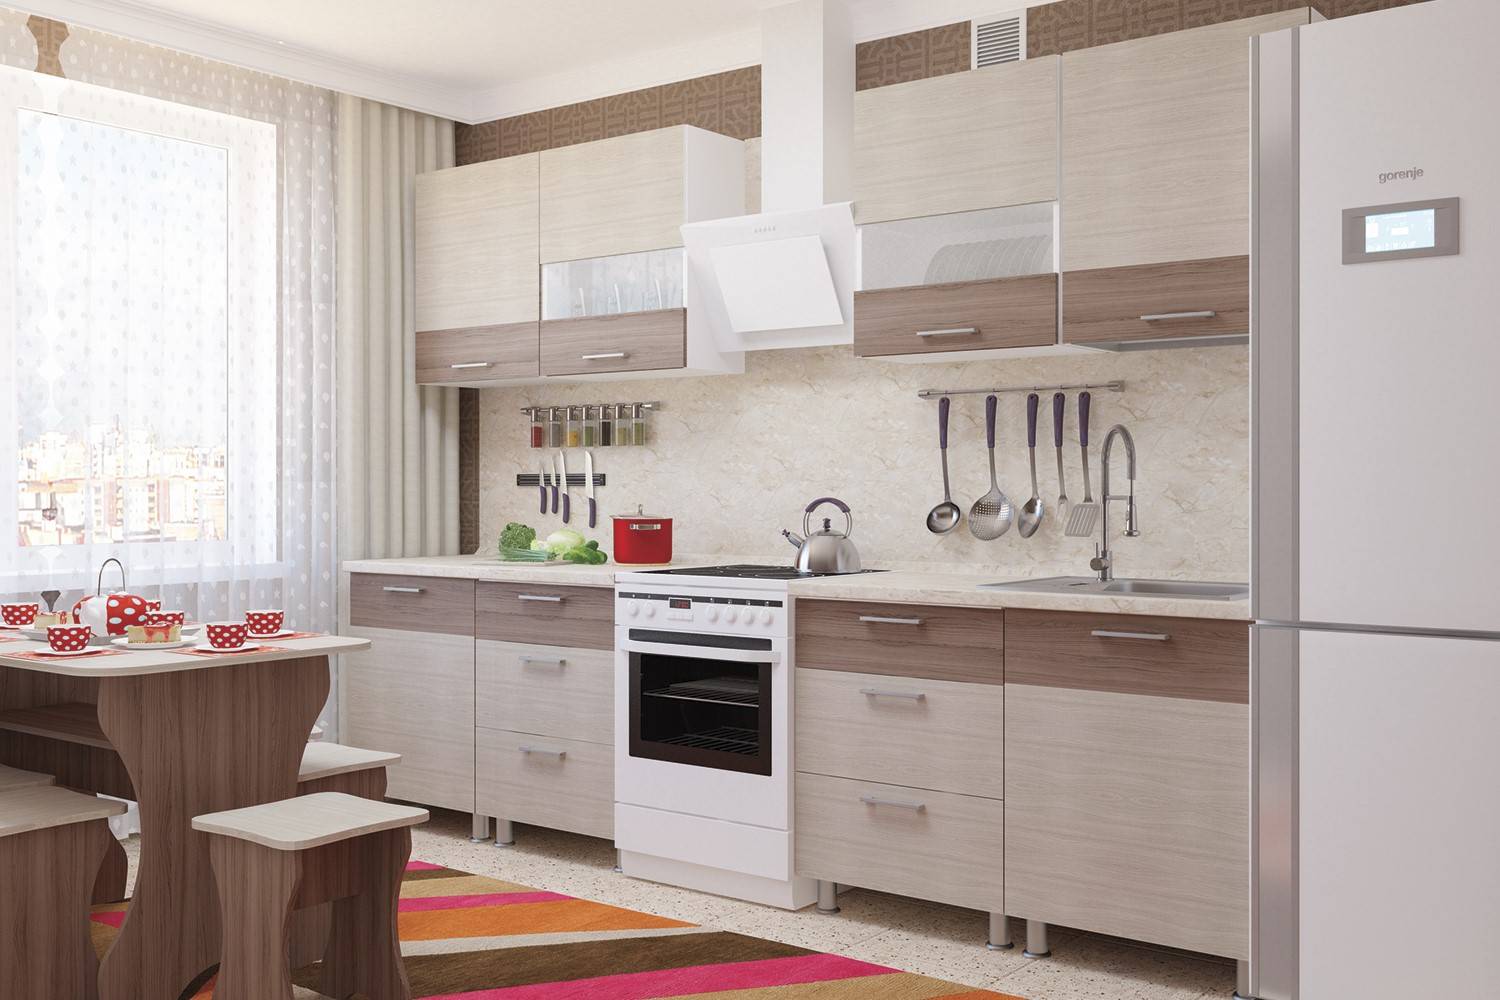 Отзывы о кухнях леруа мерлен: 47 реальных фото в квартирах и салонах